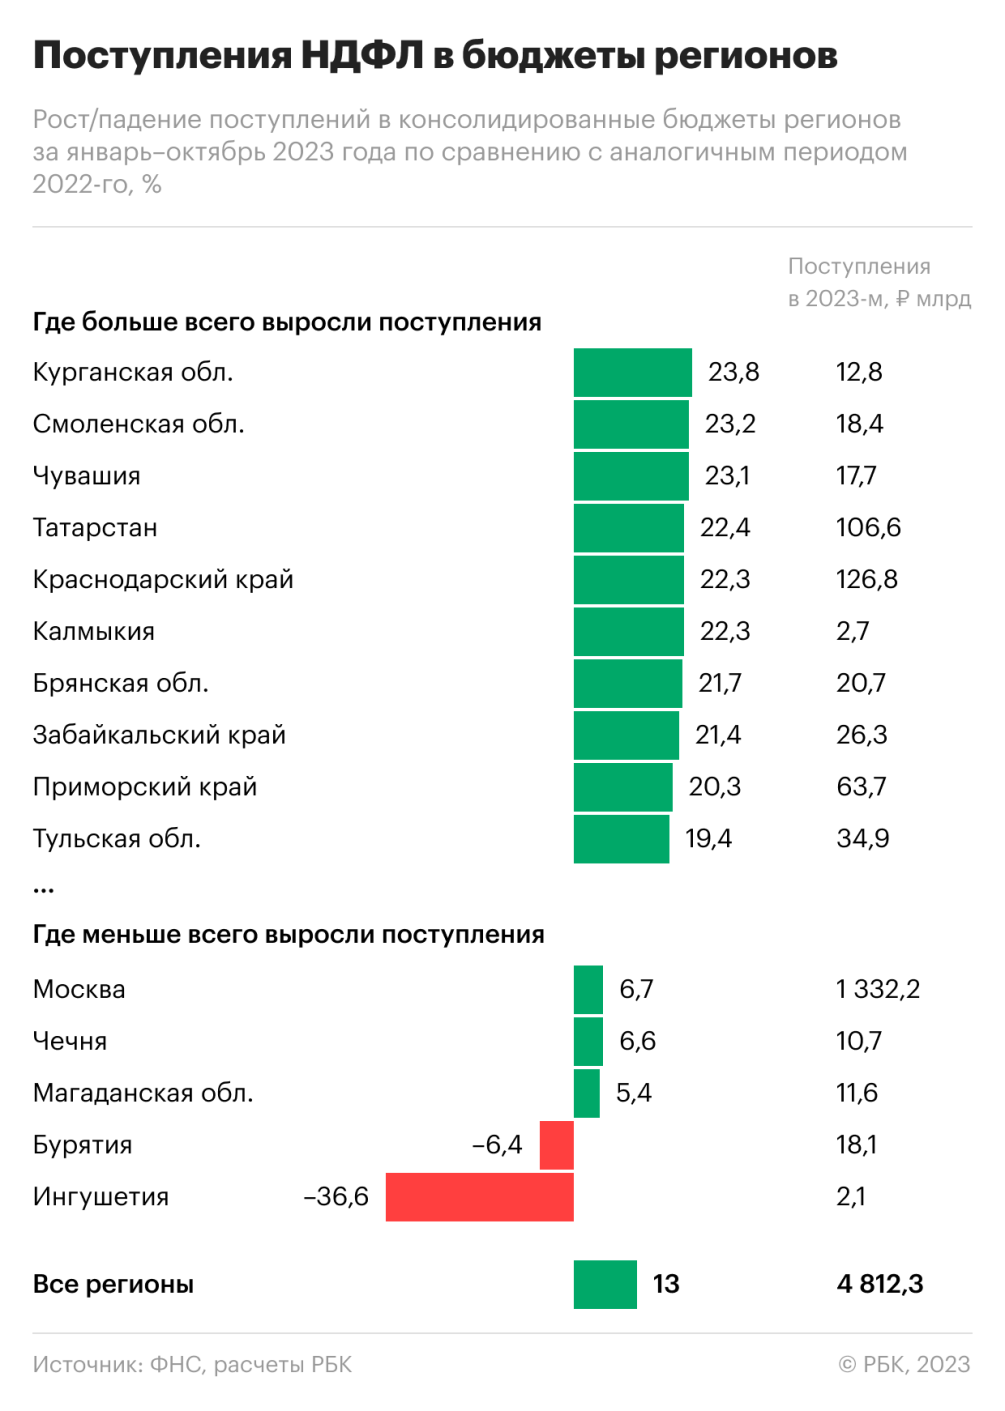 Власти Петербурга прогнозируют рост доходов бюджета в г. на 7% - Ведомости. Северо-Запад